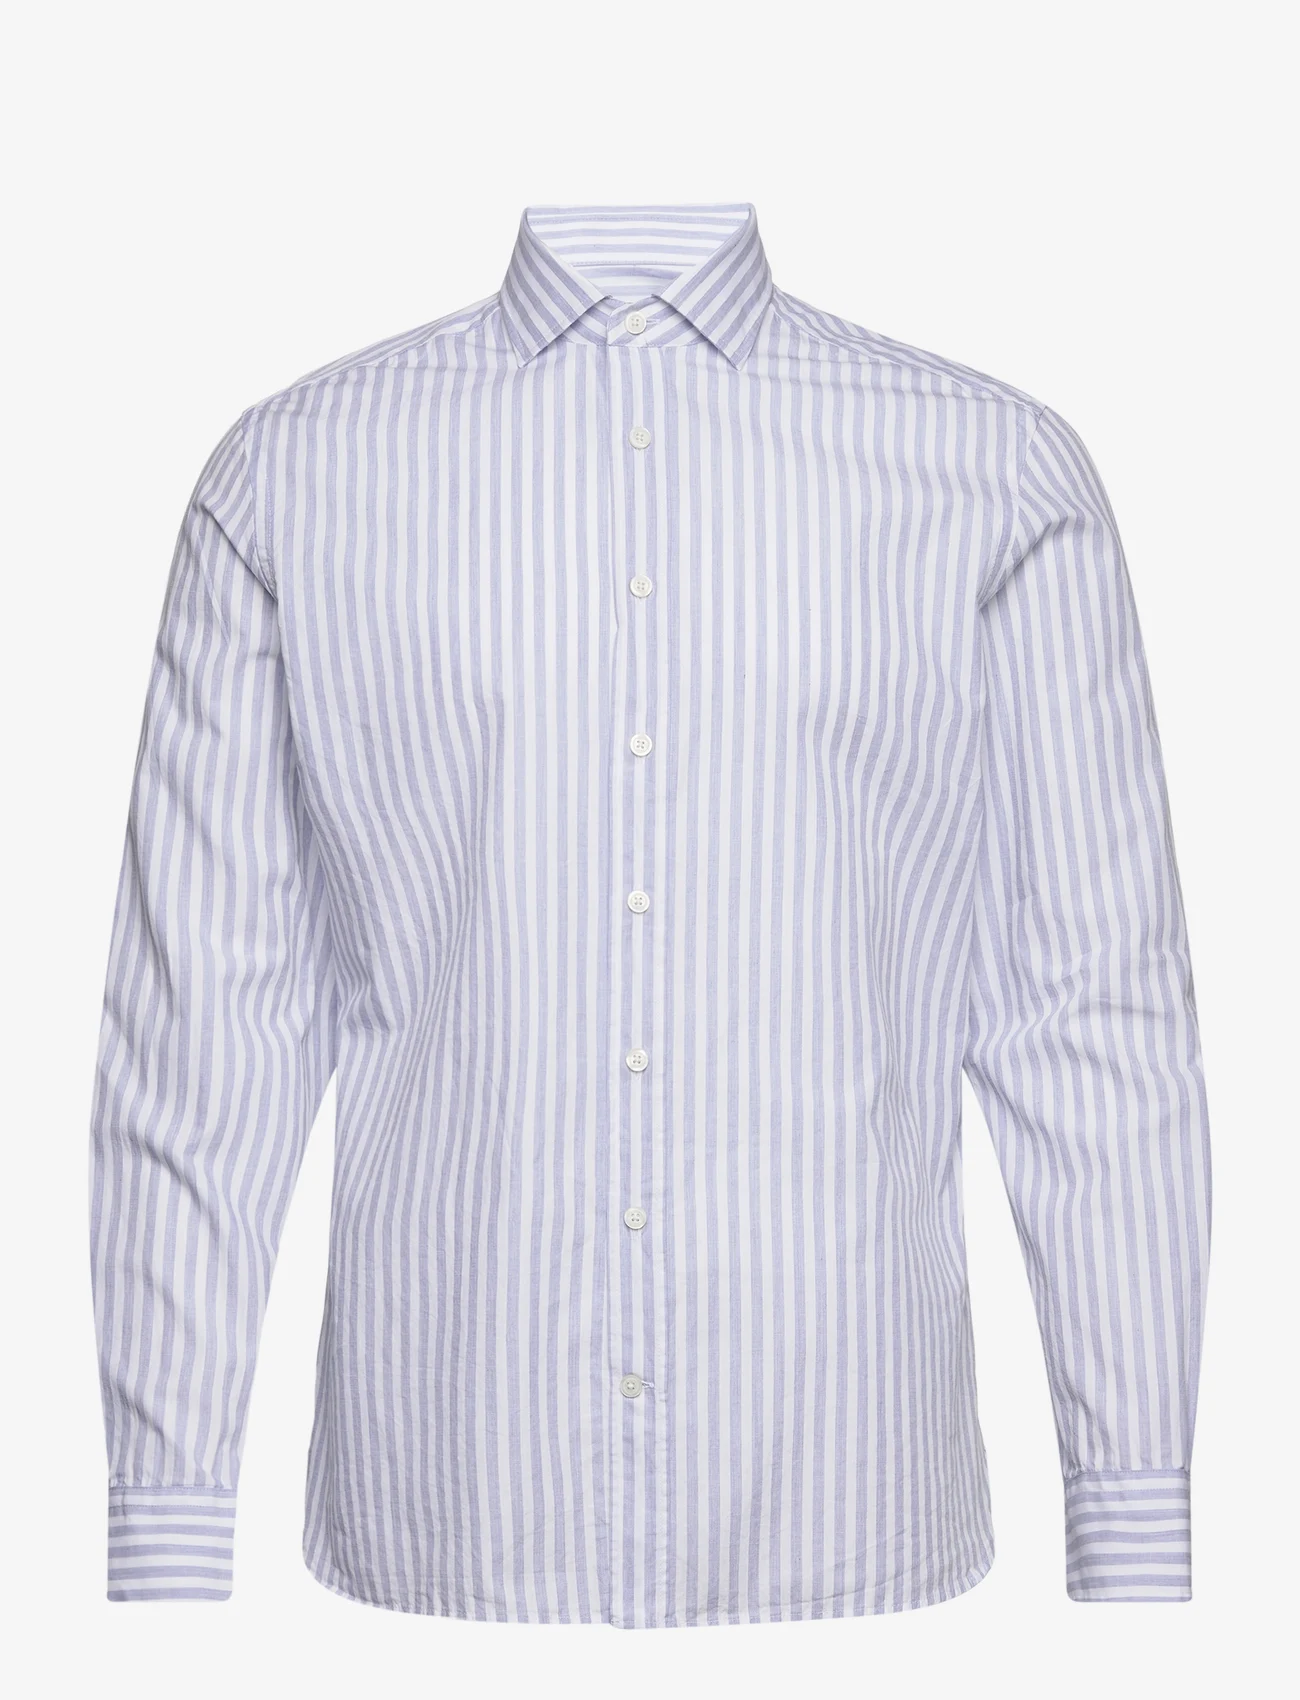 Hackett London - MELANGE STRIPES - casual skjortor - blue/white - 0